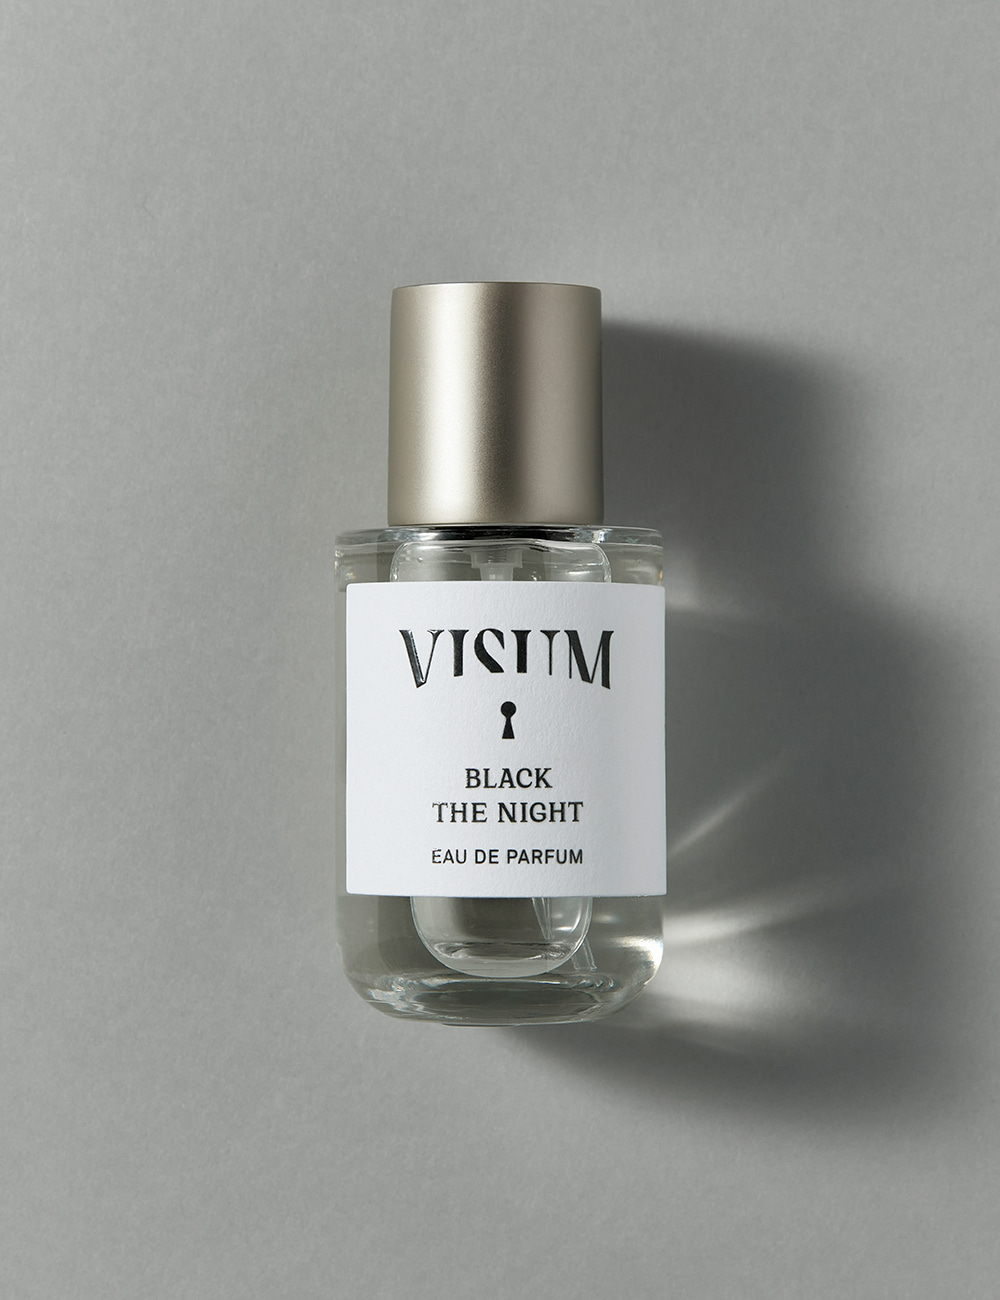 BLACK THE NIGHT Eau de parfum 30ml, 비숨